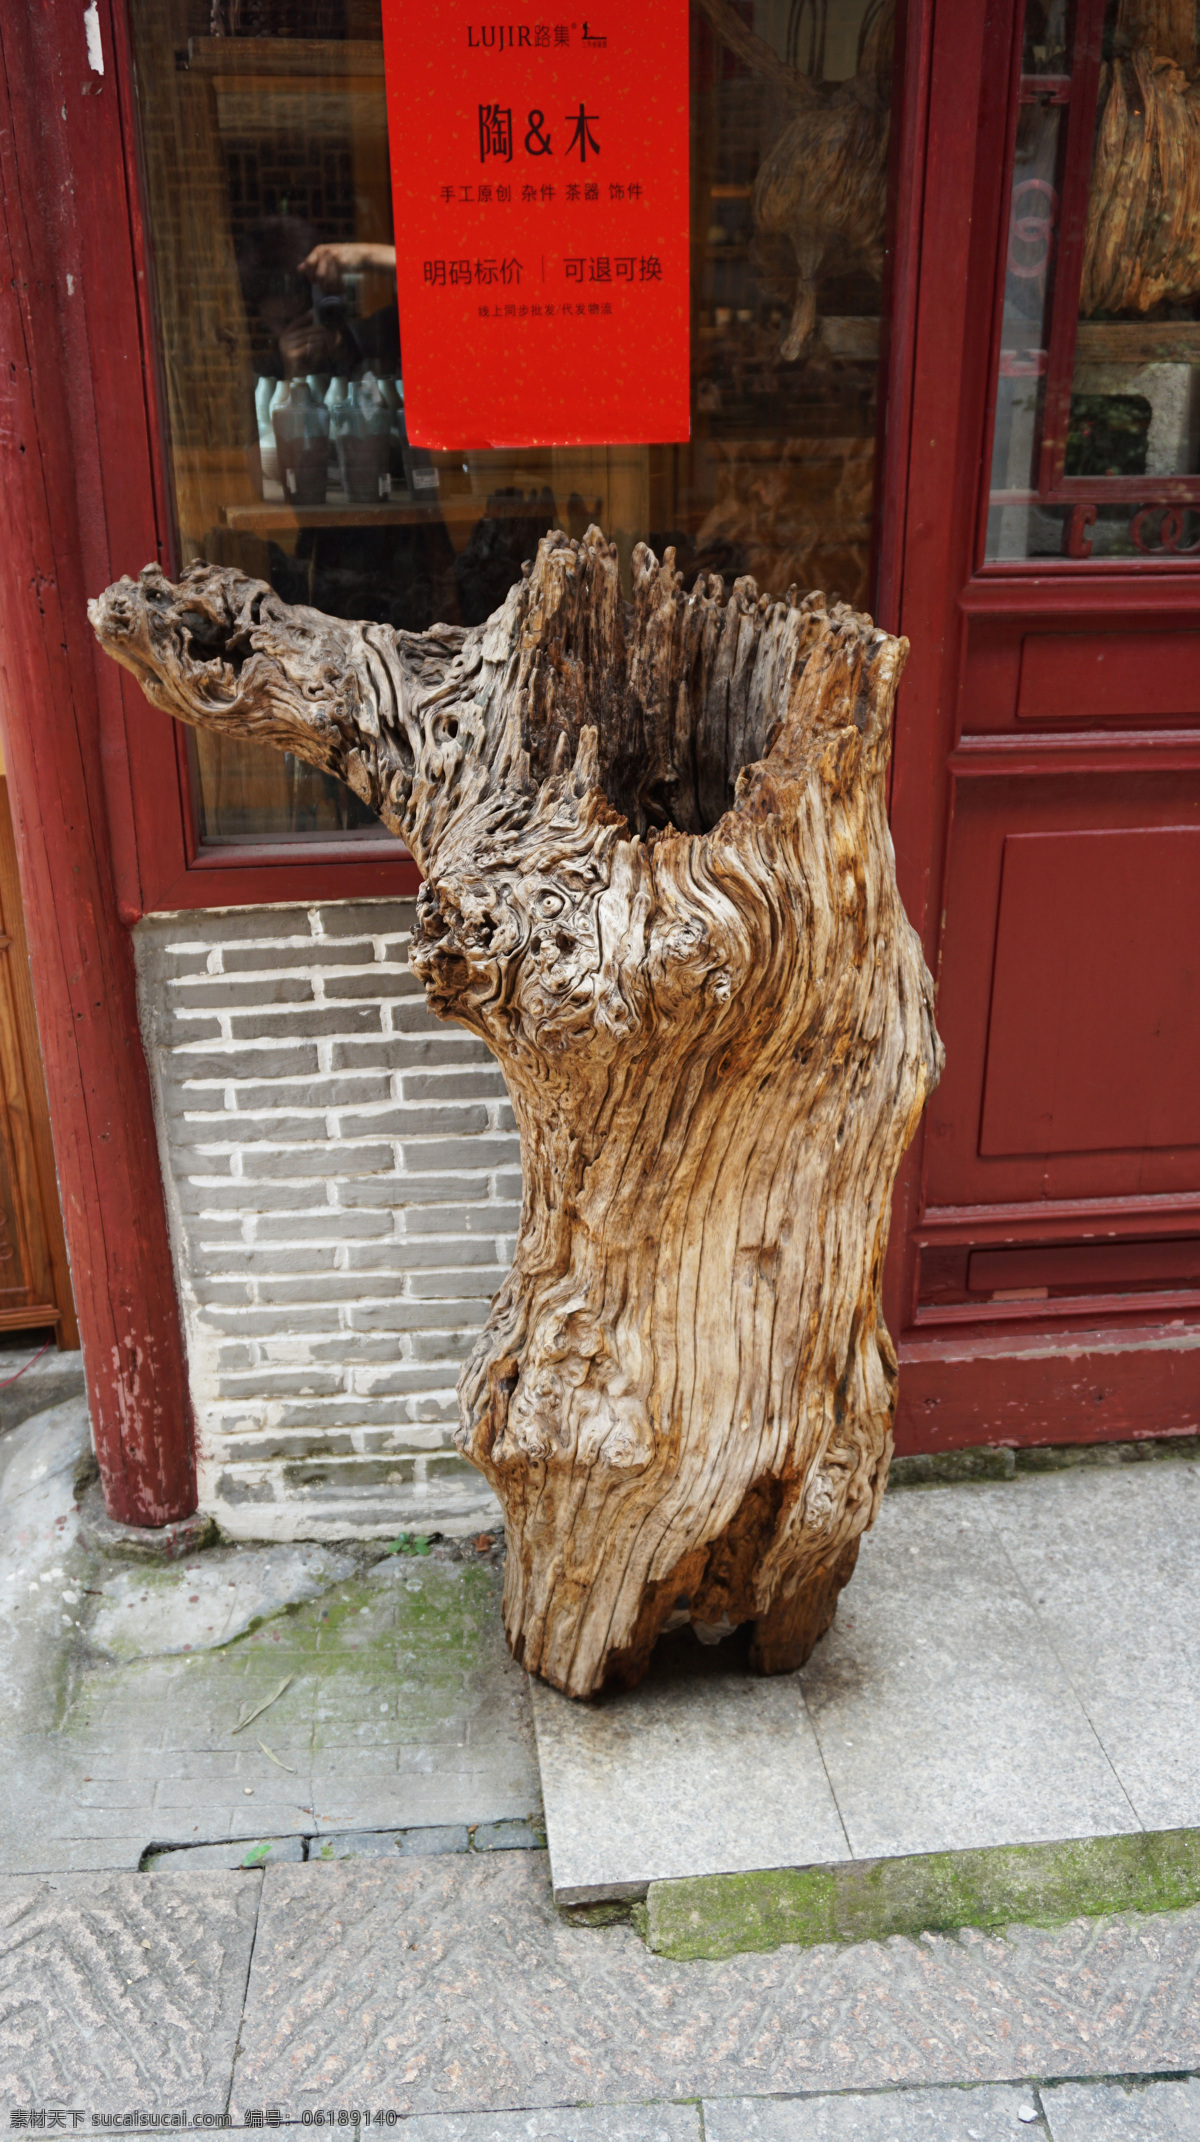 枯木根雕 树根 根雕 古木 枯木 雕塑 艺术 木雕摆件 木雕 经典摄影